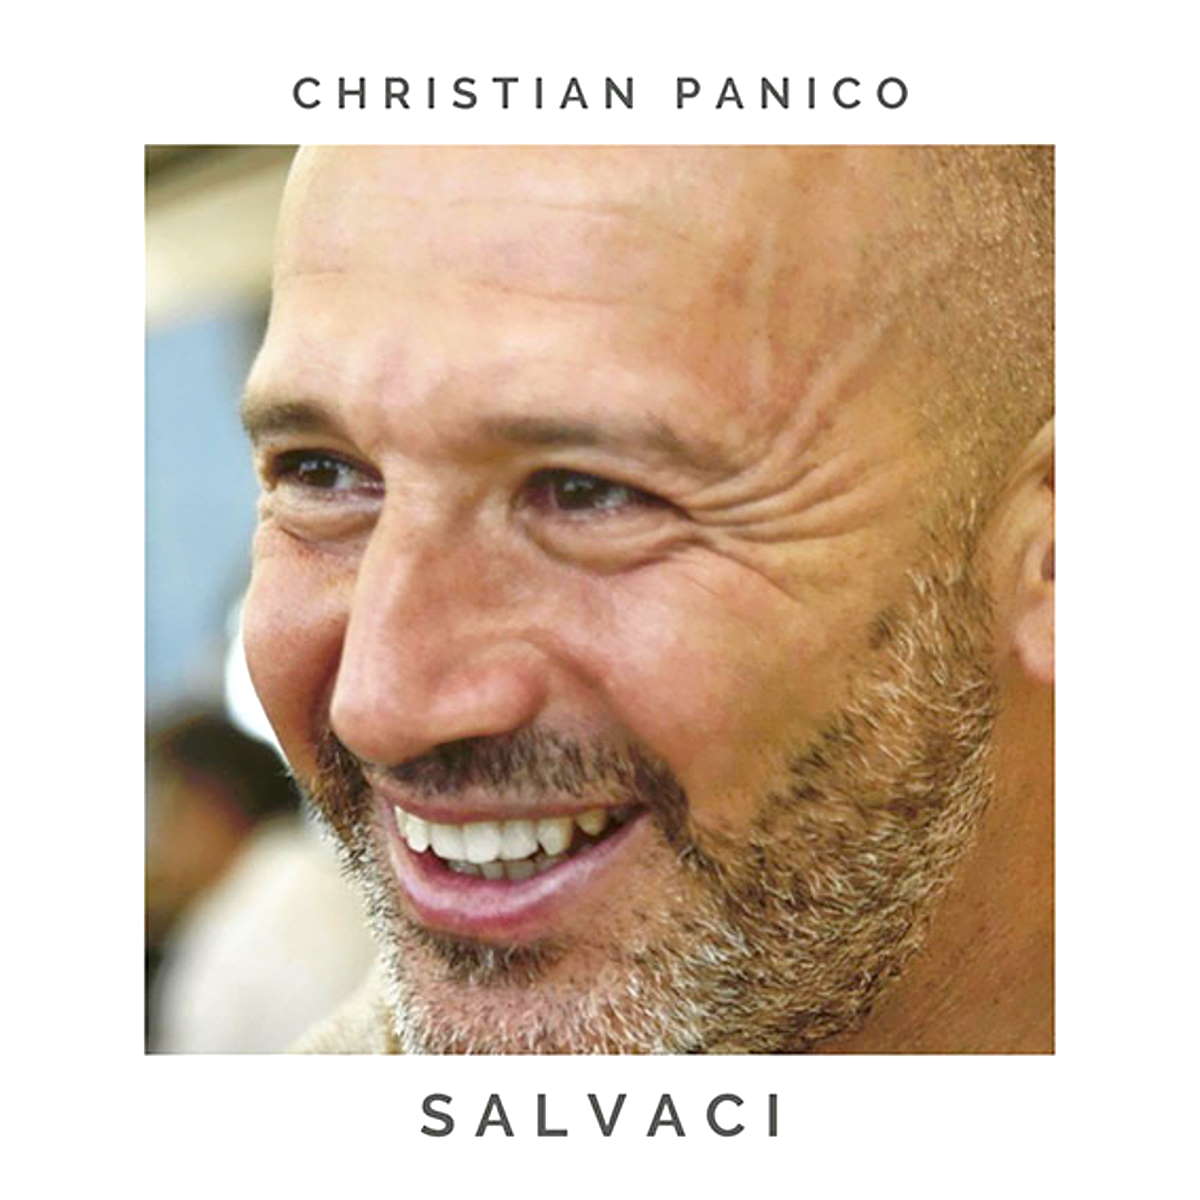 Christian Panico: disponibile in radio il nuovo singolo “Salvaci”. Online il video